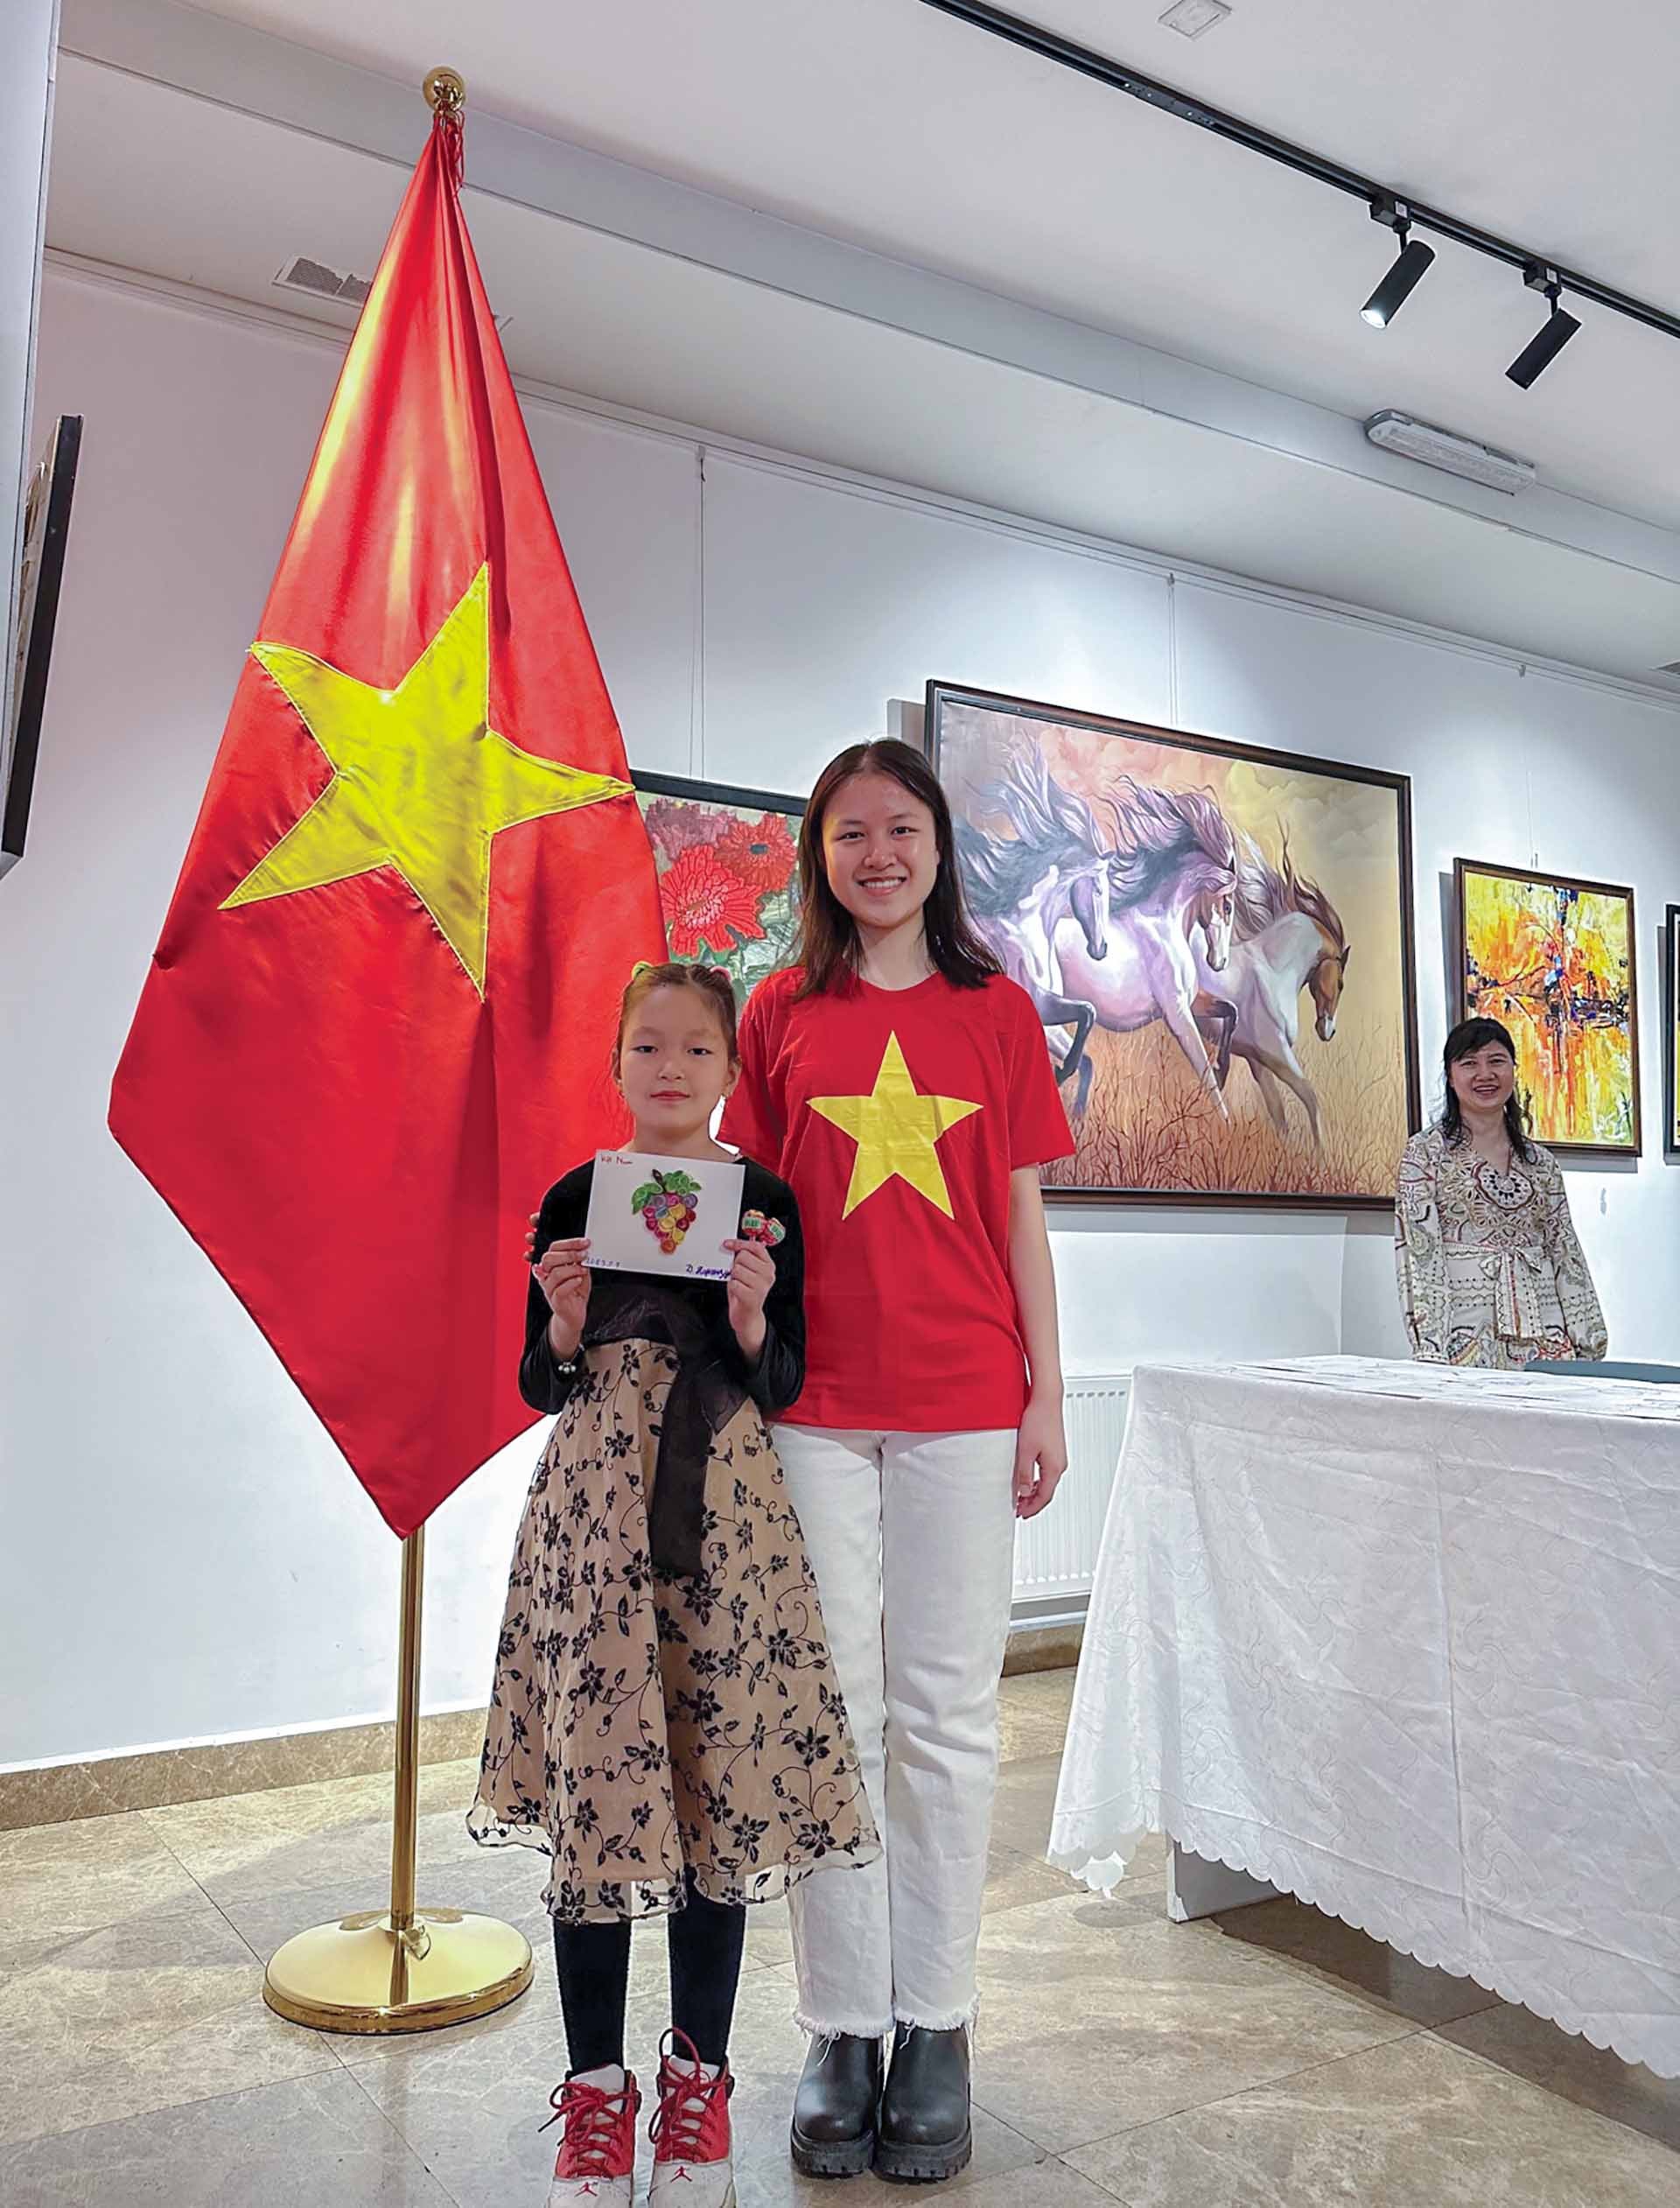 Đại sứ quán Việt Nam tại Mông Cổ chú trọng giao lưu văn hóa và quảng bá hình ảnh đất nước